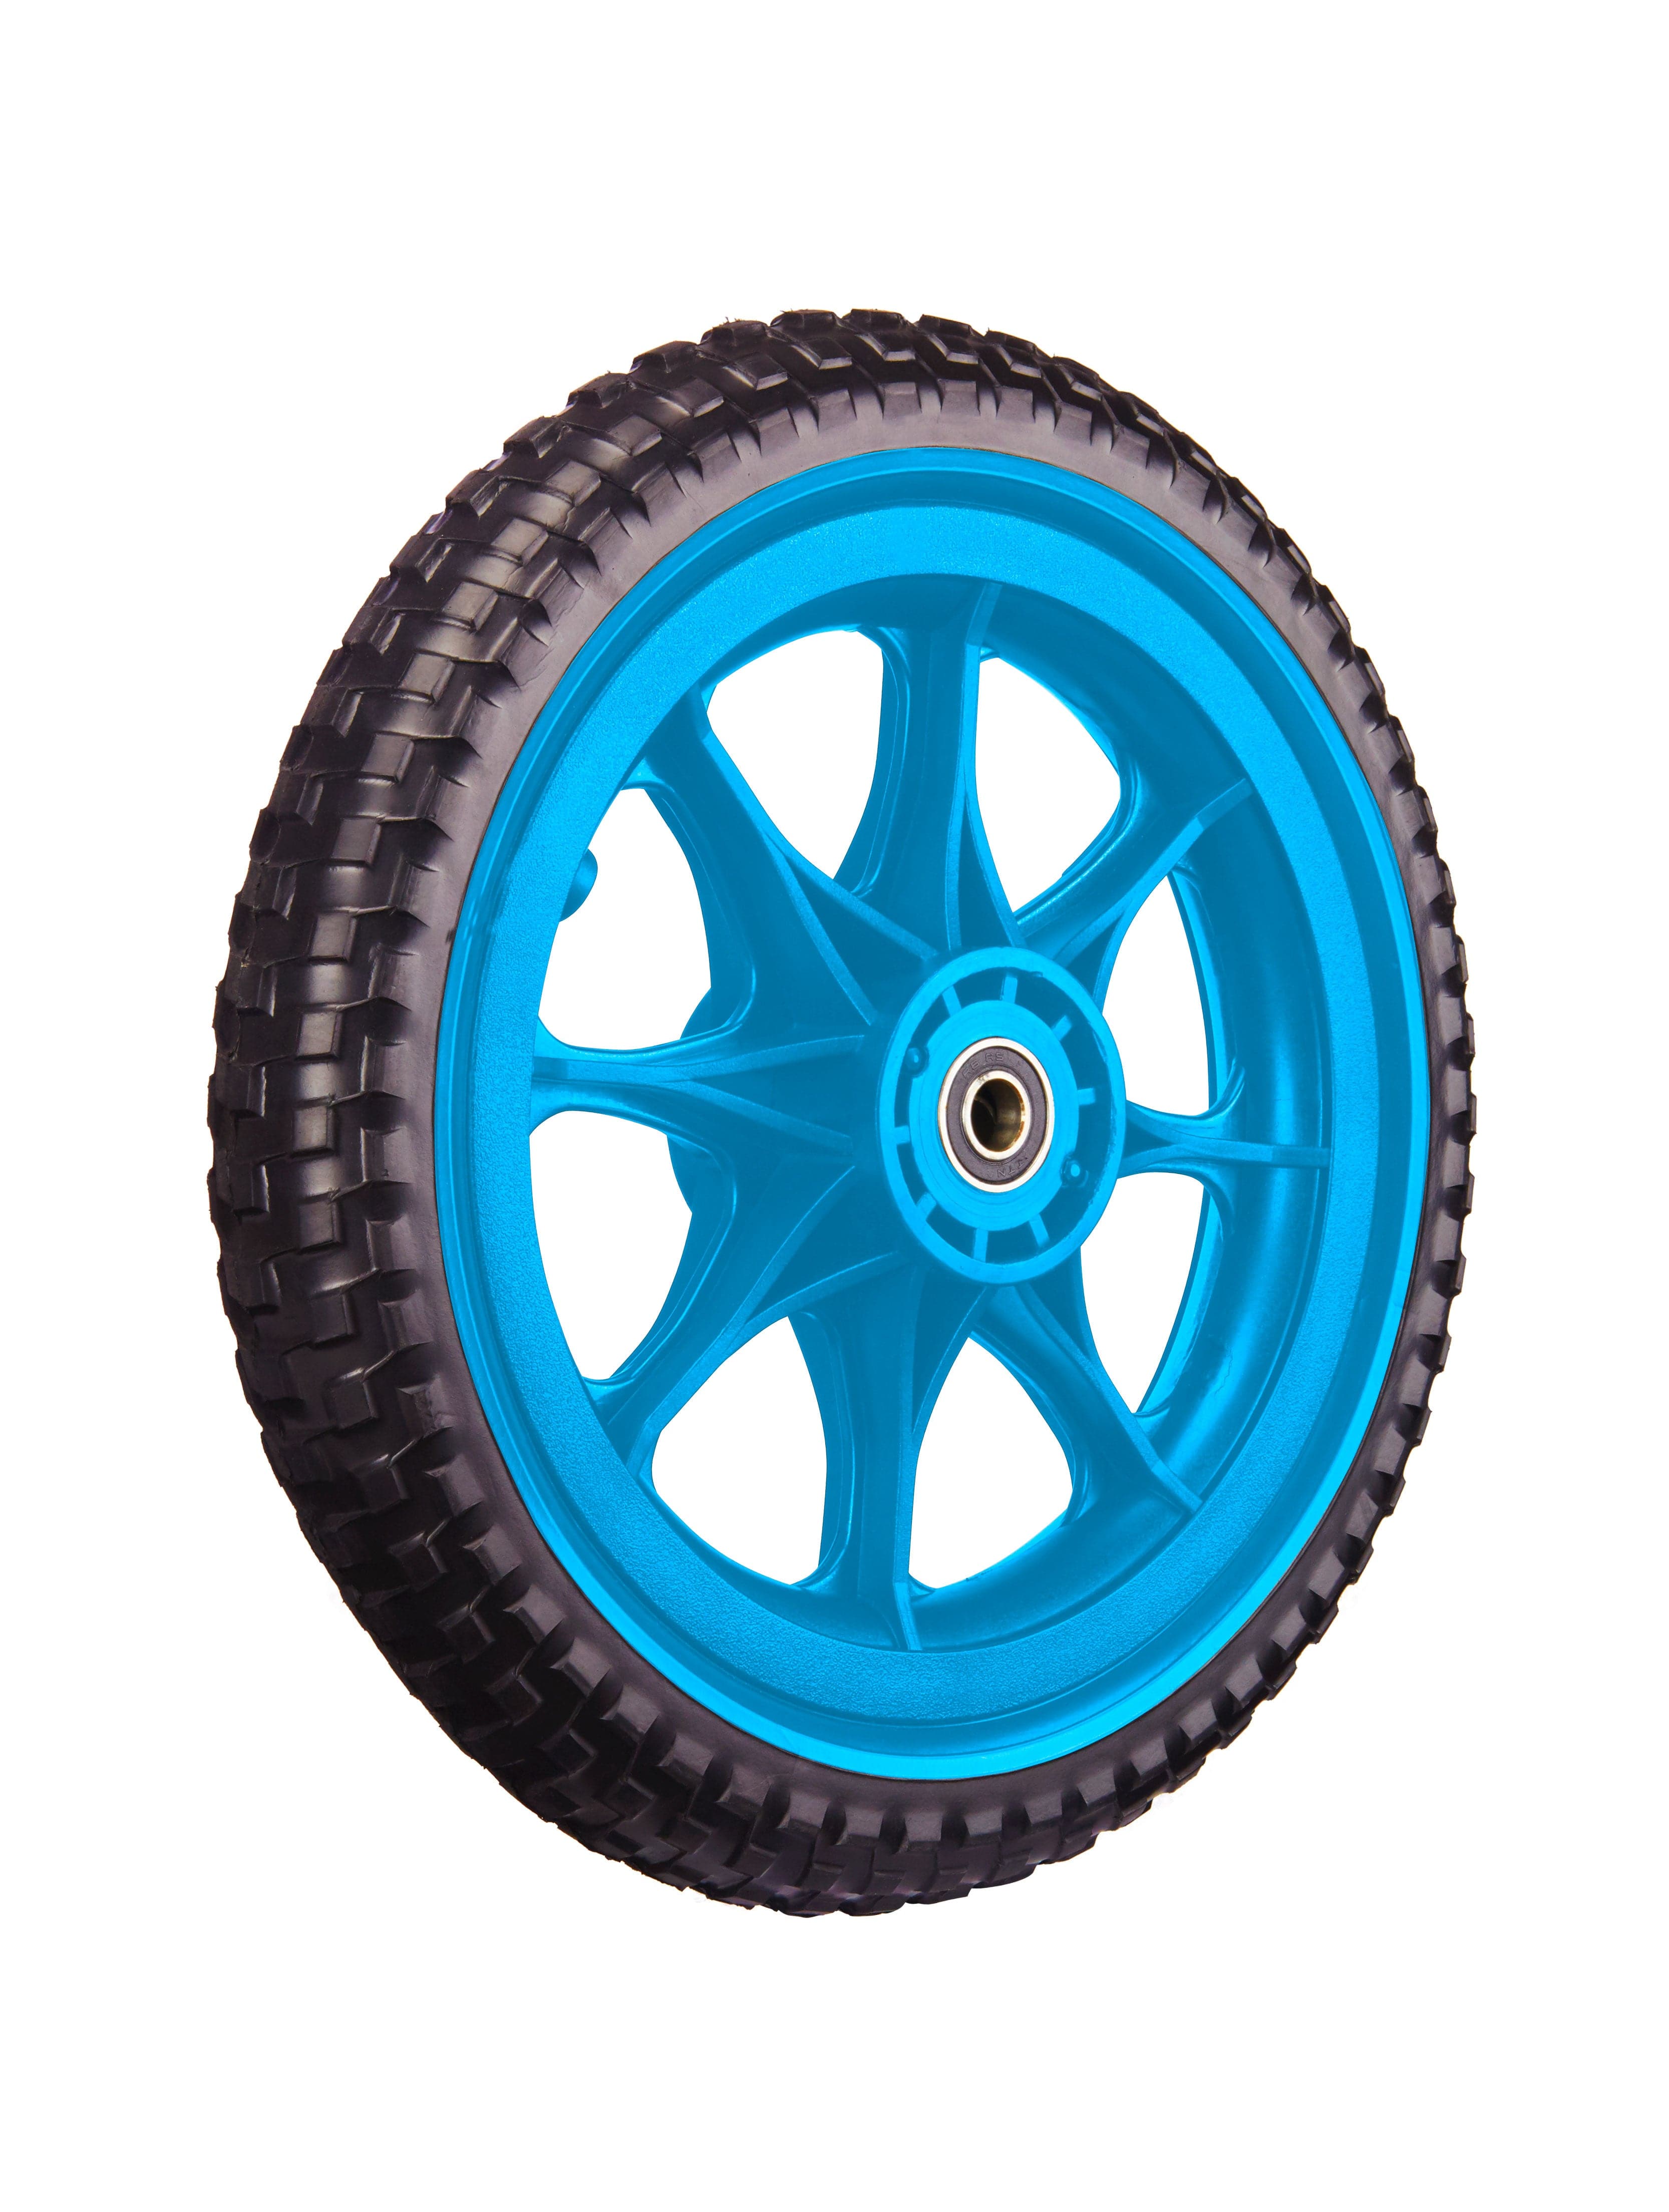 All-Terrain Tubeless Foam Wheel - blue